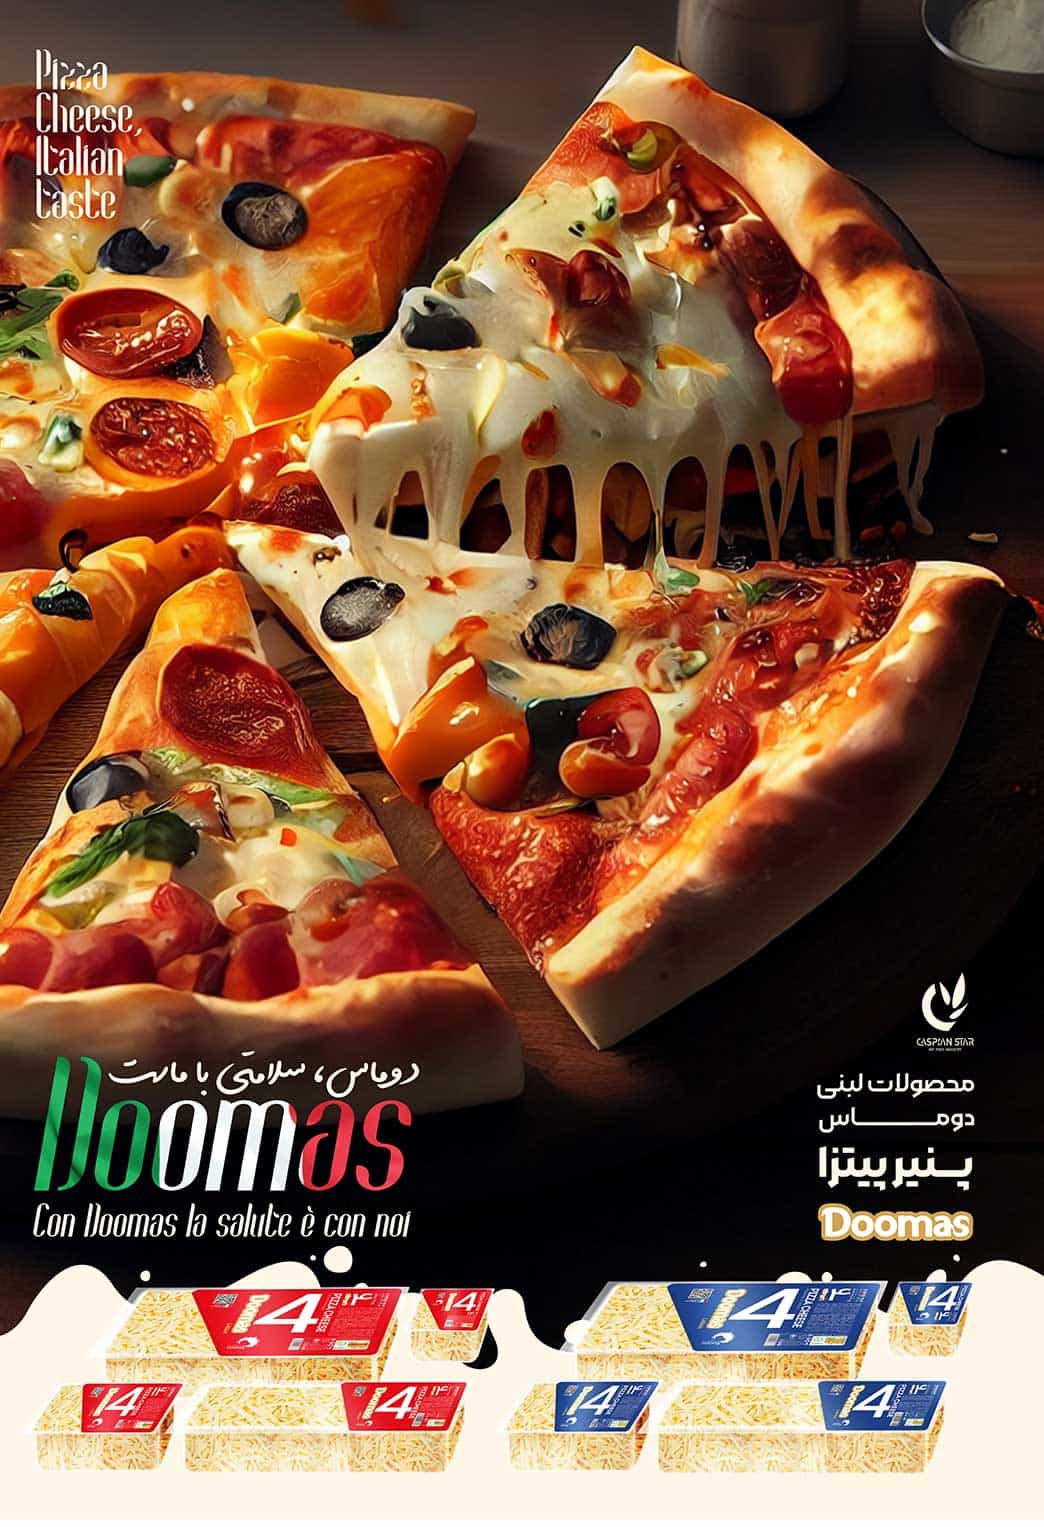 پوستر تبلیغاتی در باره پنیر پیتزا دوماس